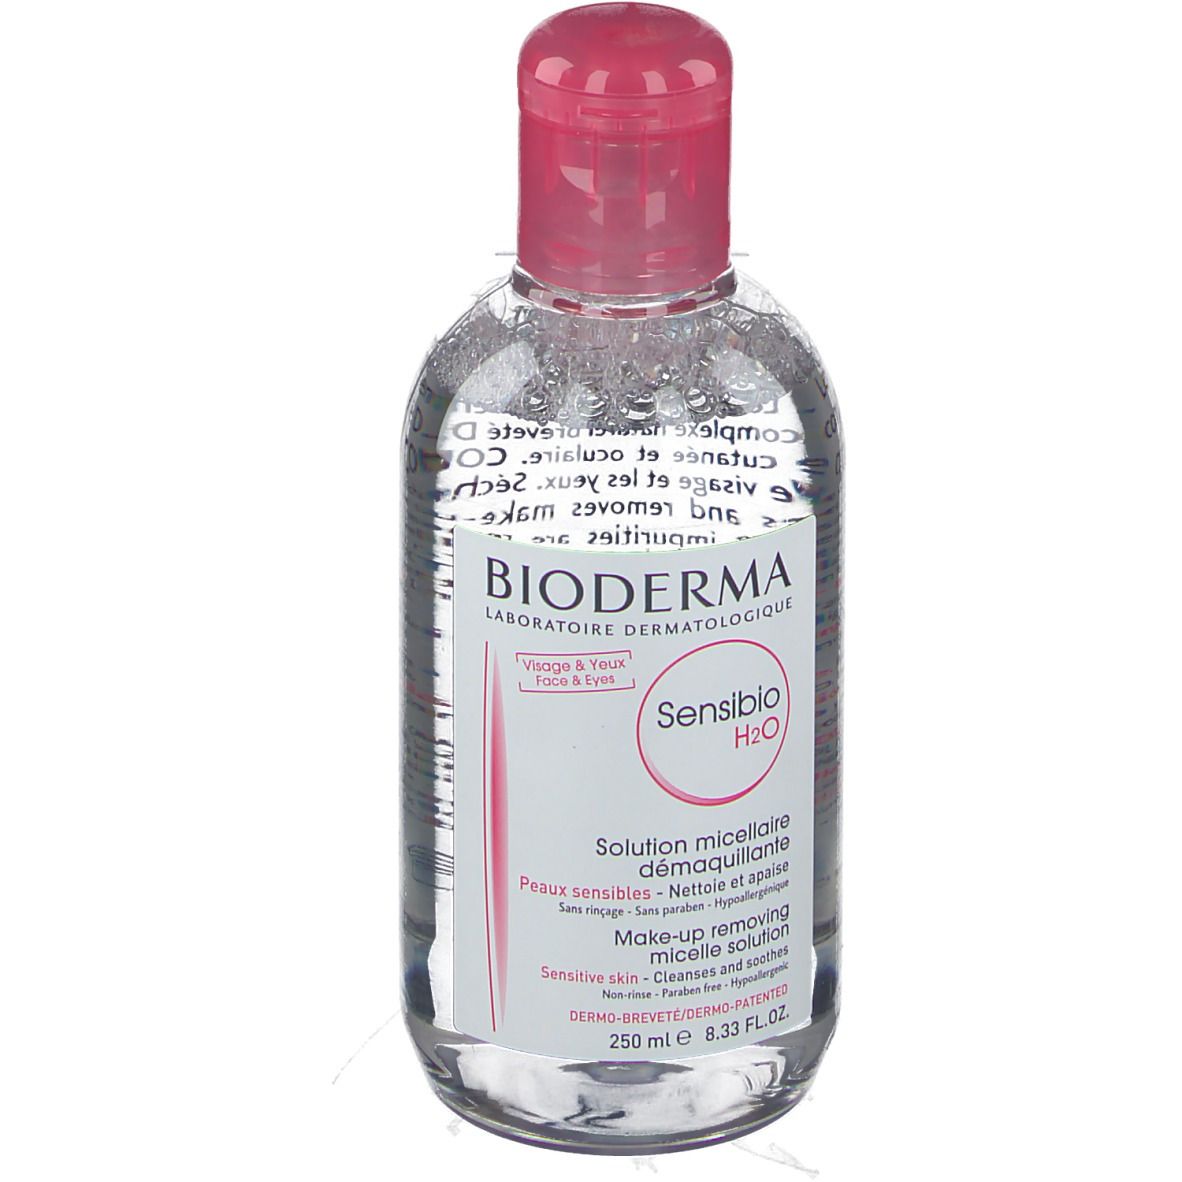 BIODERMA Sensibio H2O acqua micellare struccante 250 ml